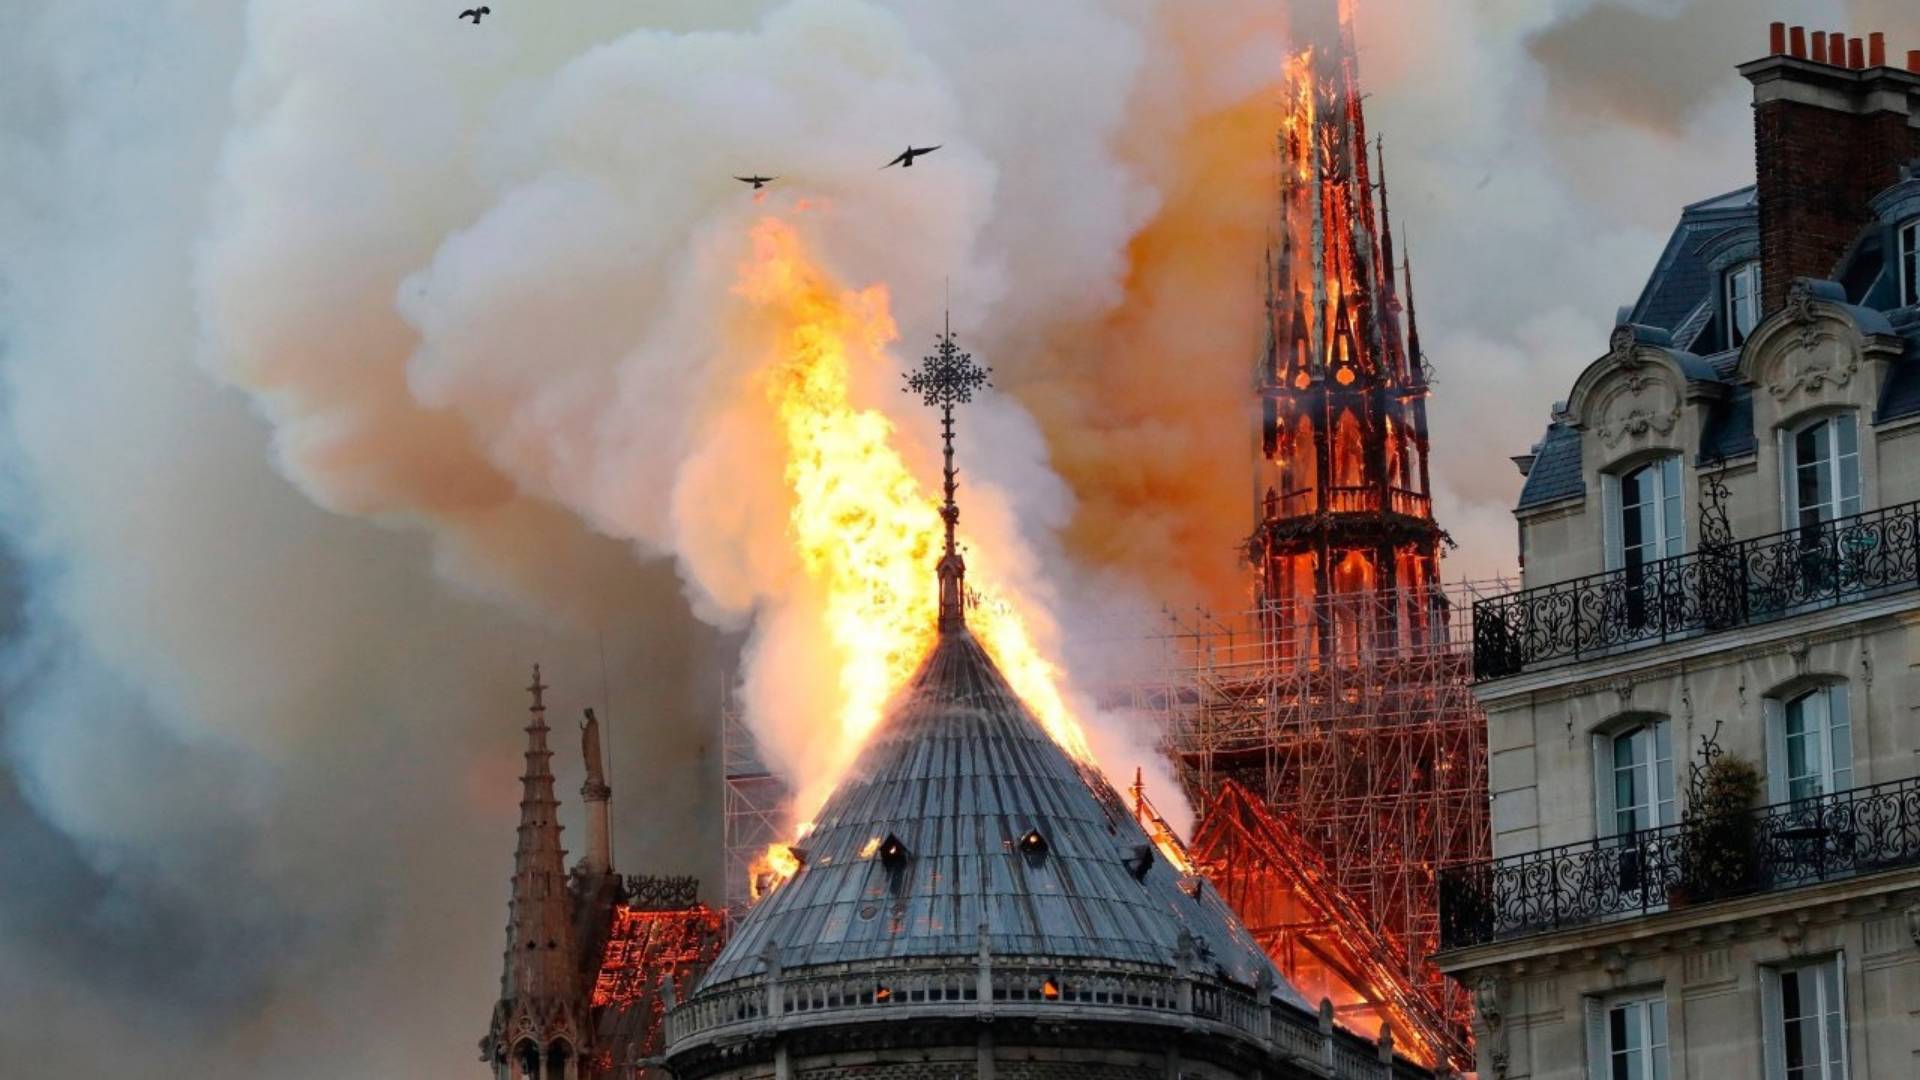 Hugo’nun ve Avrupa’nın İlham Kaynağı 'Notre-Dame Katedrali' Cayır Cayır Yandı